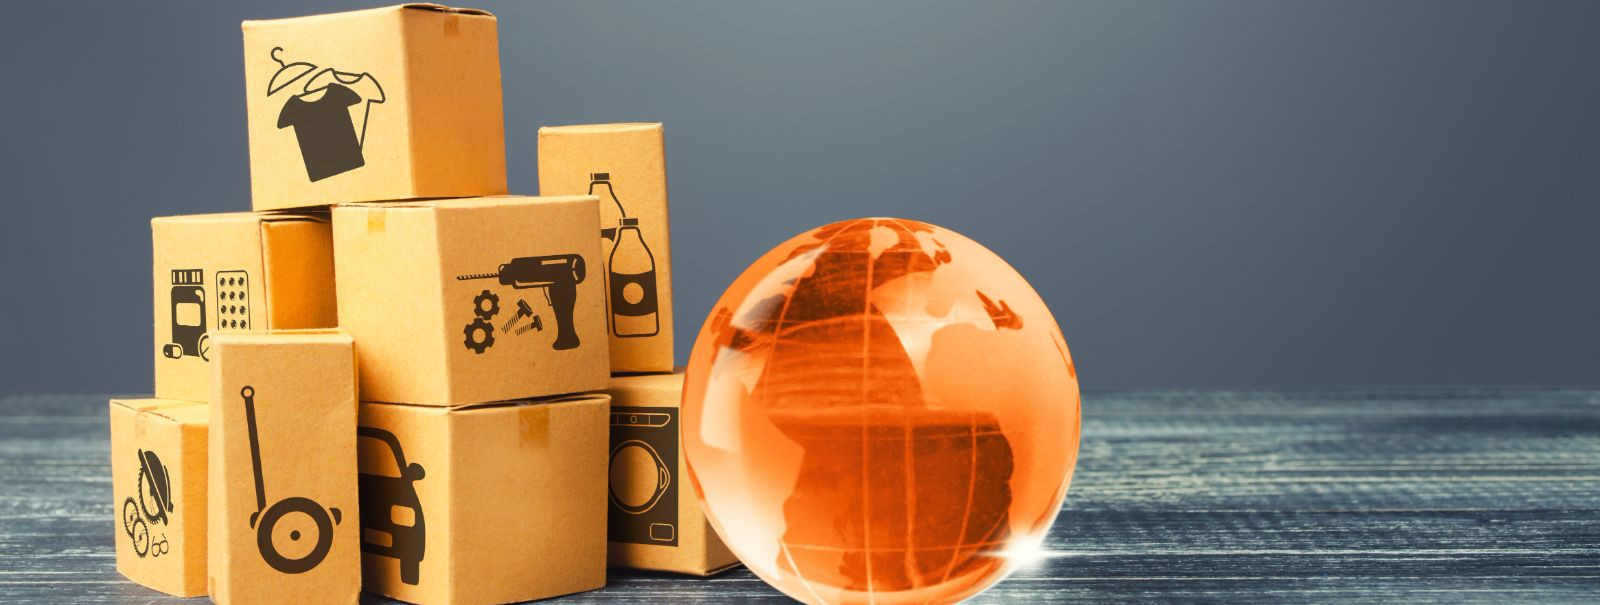 Kuna globaalne kaubandus jätkuvalt laieneb, seisab logistikasektor silmitsi üha suureneva survega kaupu tõhusalt ja ohutult toimetada. Kaubakoolitus on oluline 